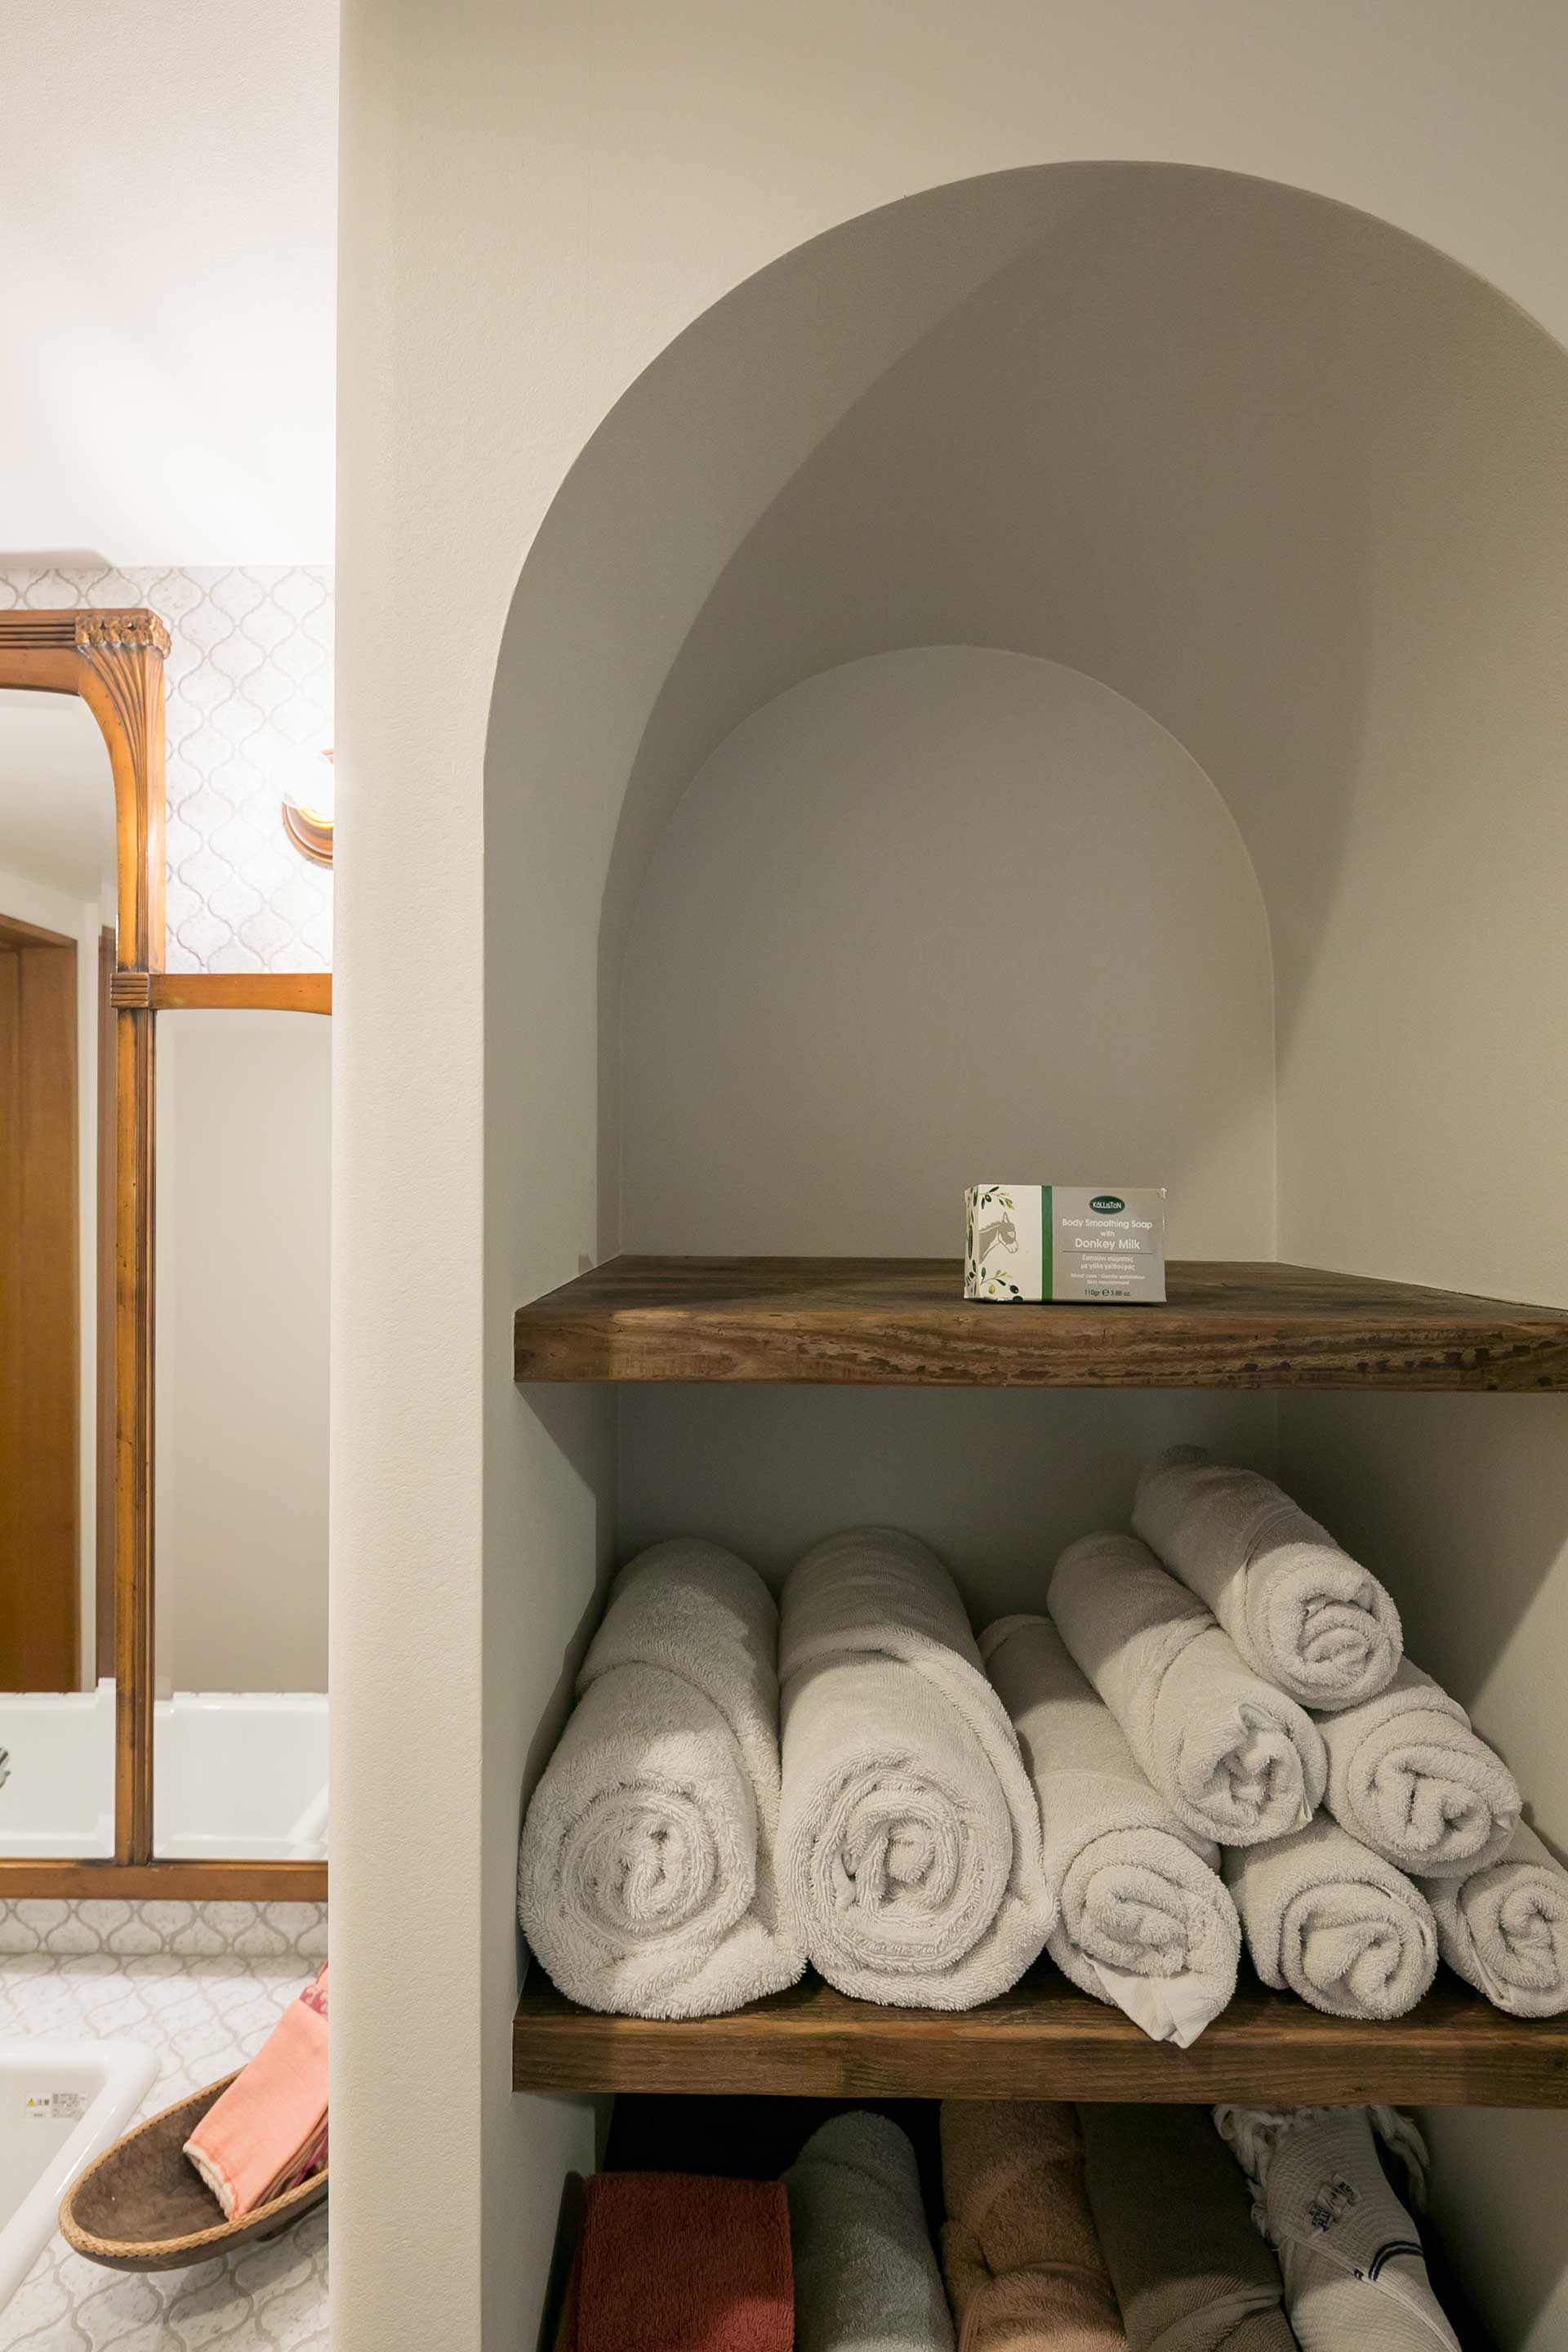 洗面所の棚はアーチと足場板の組み合わせ。リゾートホテルのような洗練された佇まい。